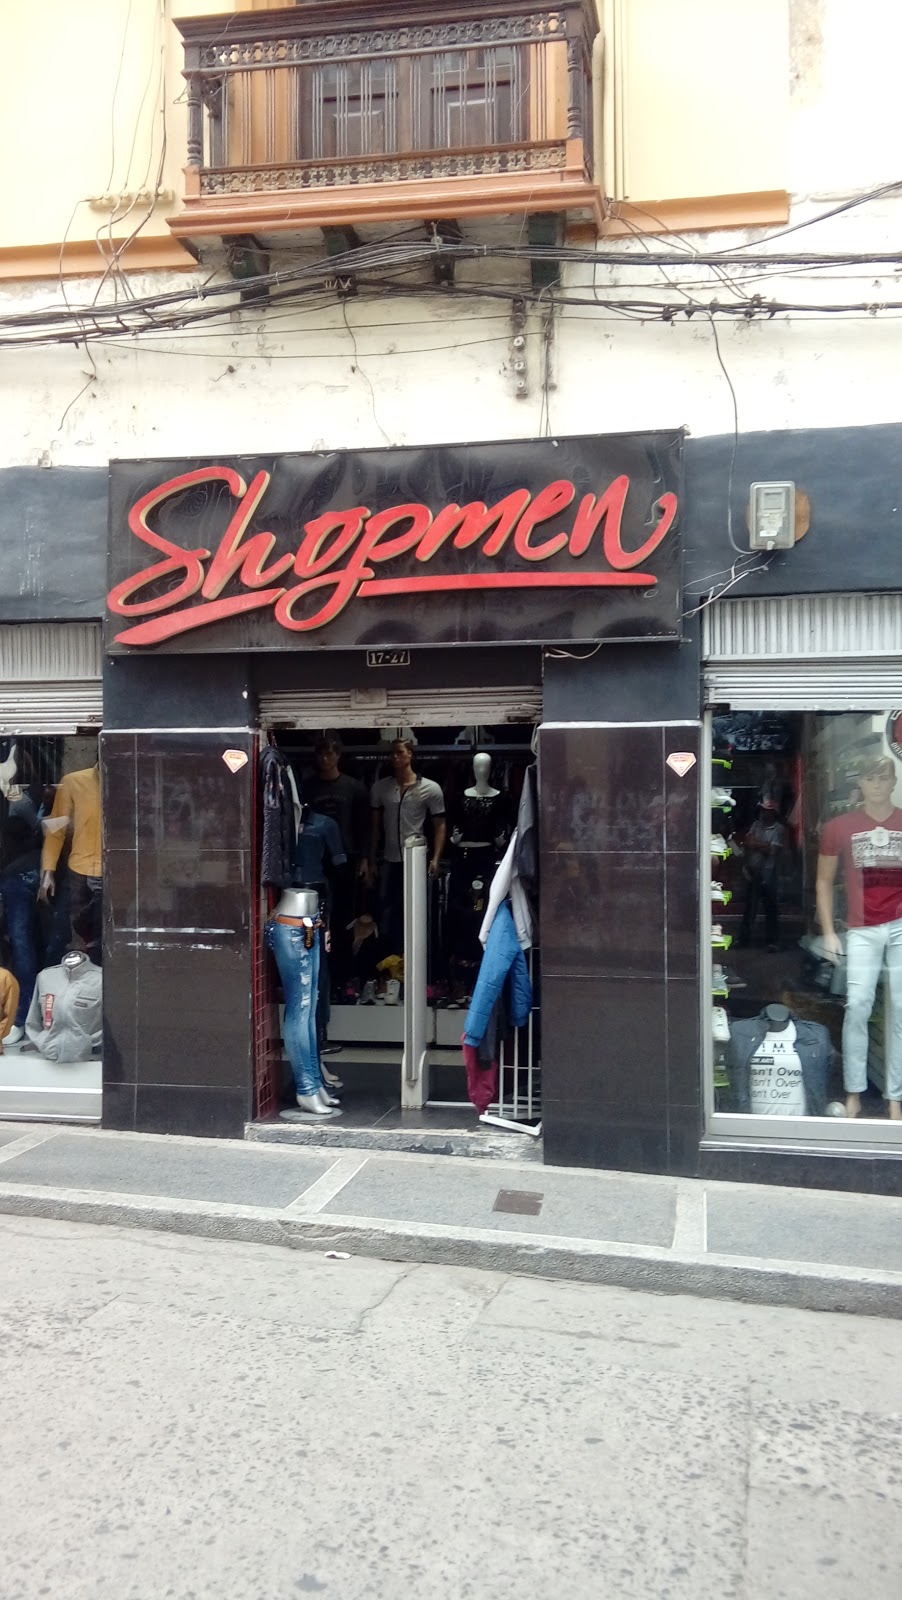 Shopmen